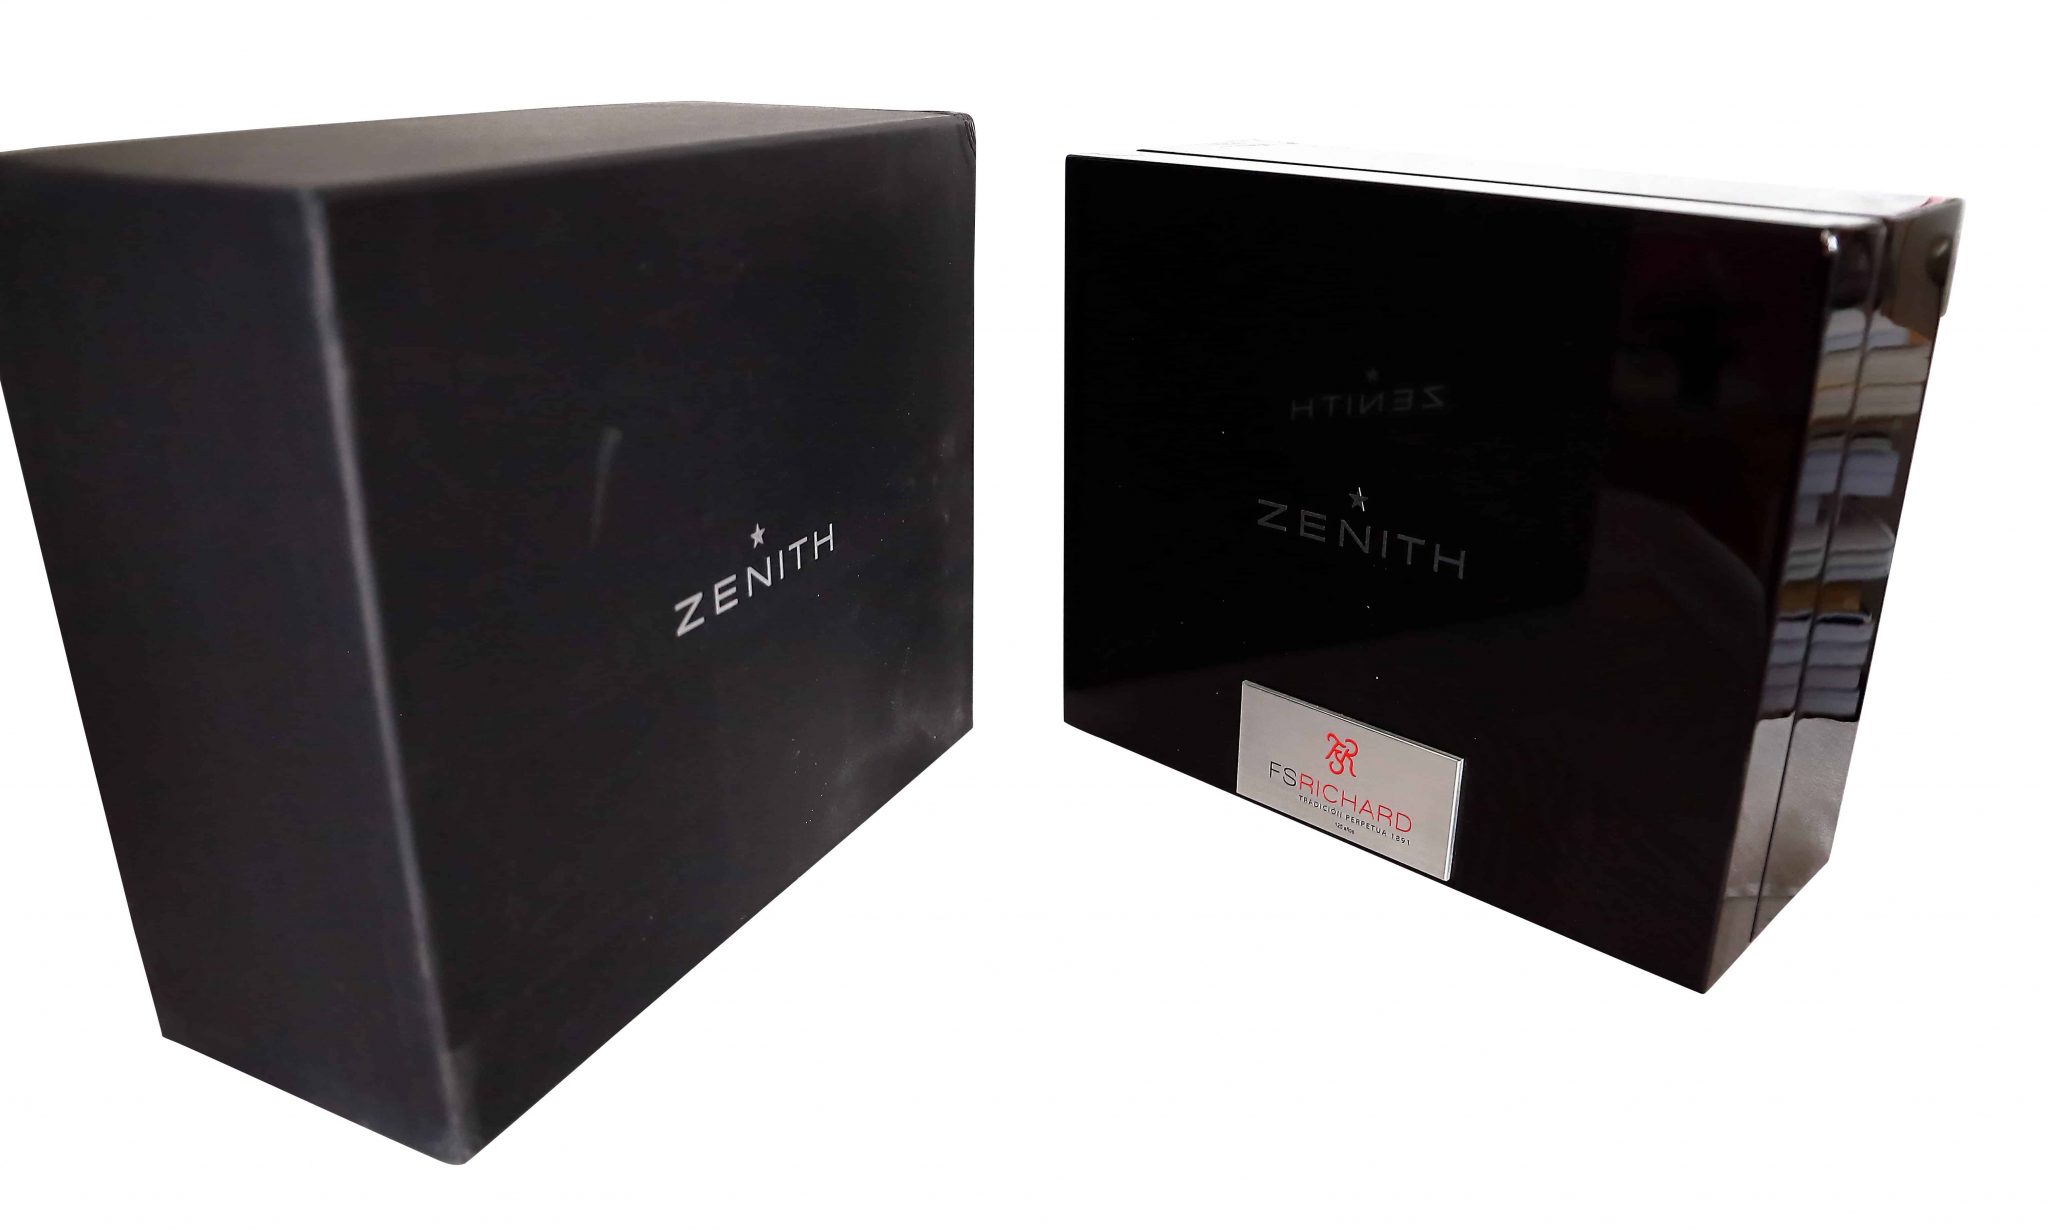 Zenith FS Richard Watch Box - Rare Watch Parts